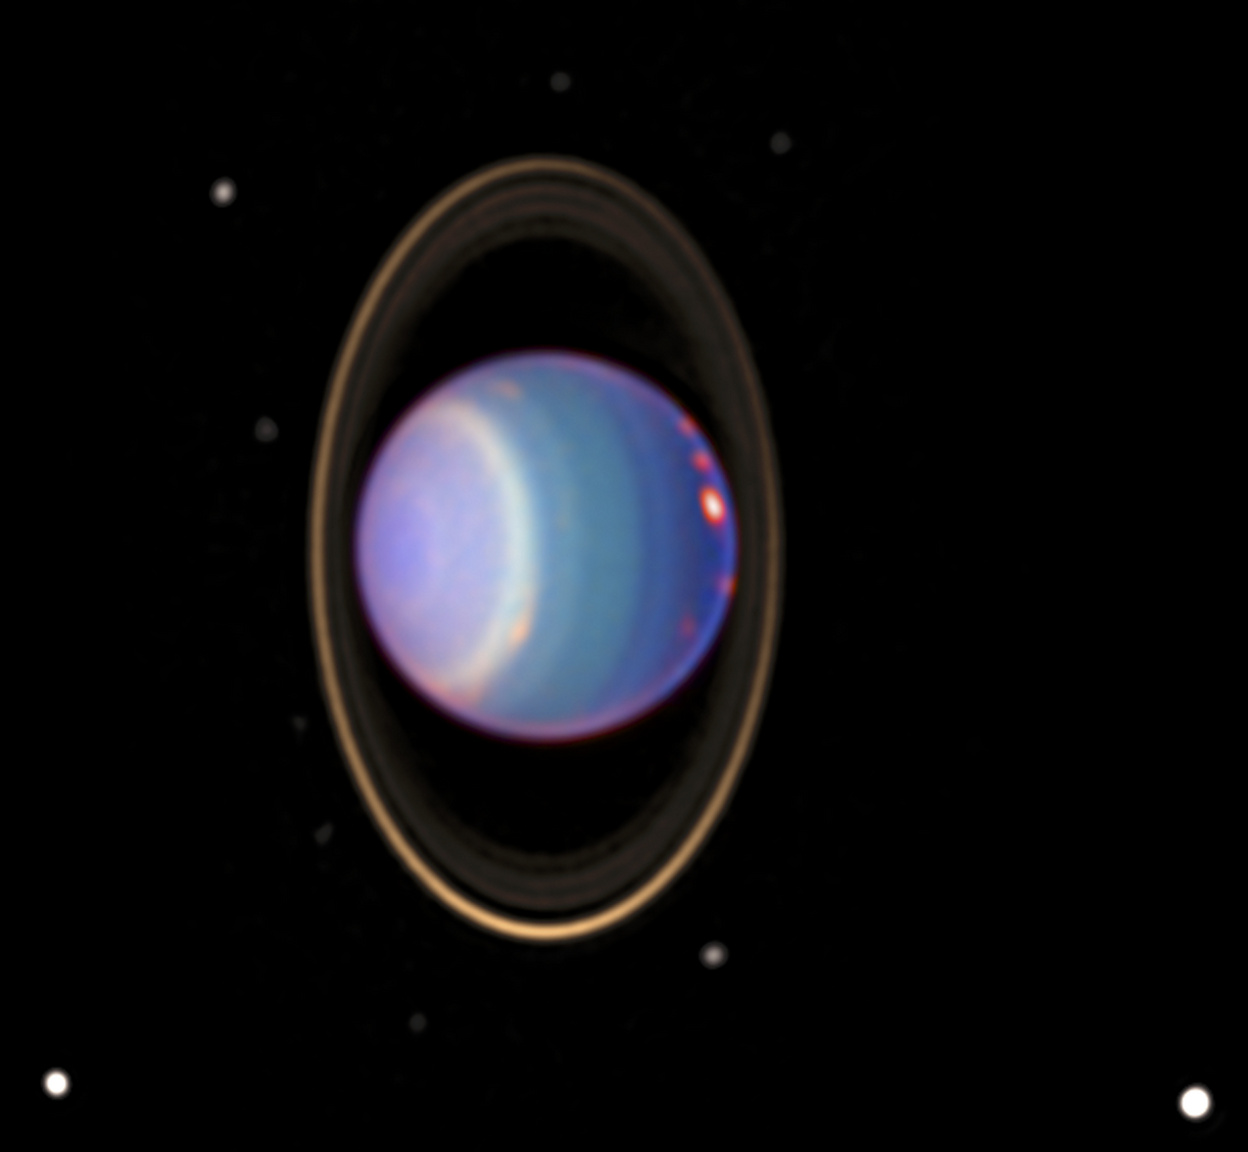 Ezen az 1998 augusztusában, infravörös közeli tartományban készült, utólag színezett fotón az Uránusz és négy gyűrűje látható, valamint a bolygó 17 holdja közül tíz. A vöröses foltok nagy magasságú felhőzetet jelölnek.